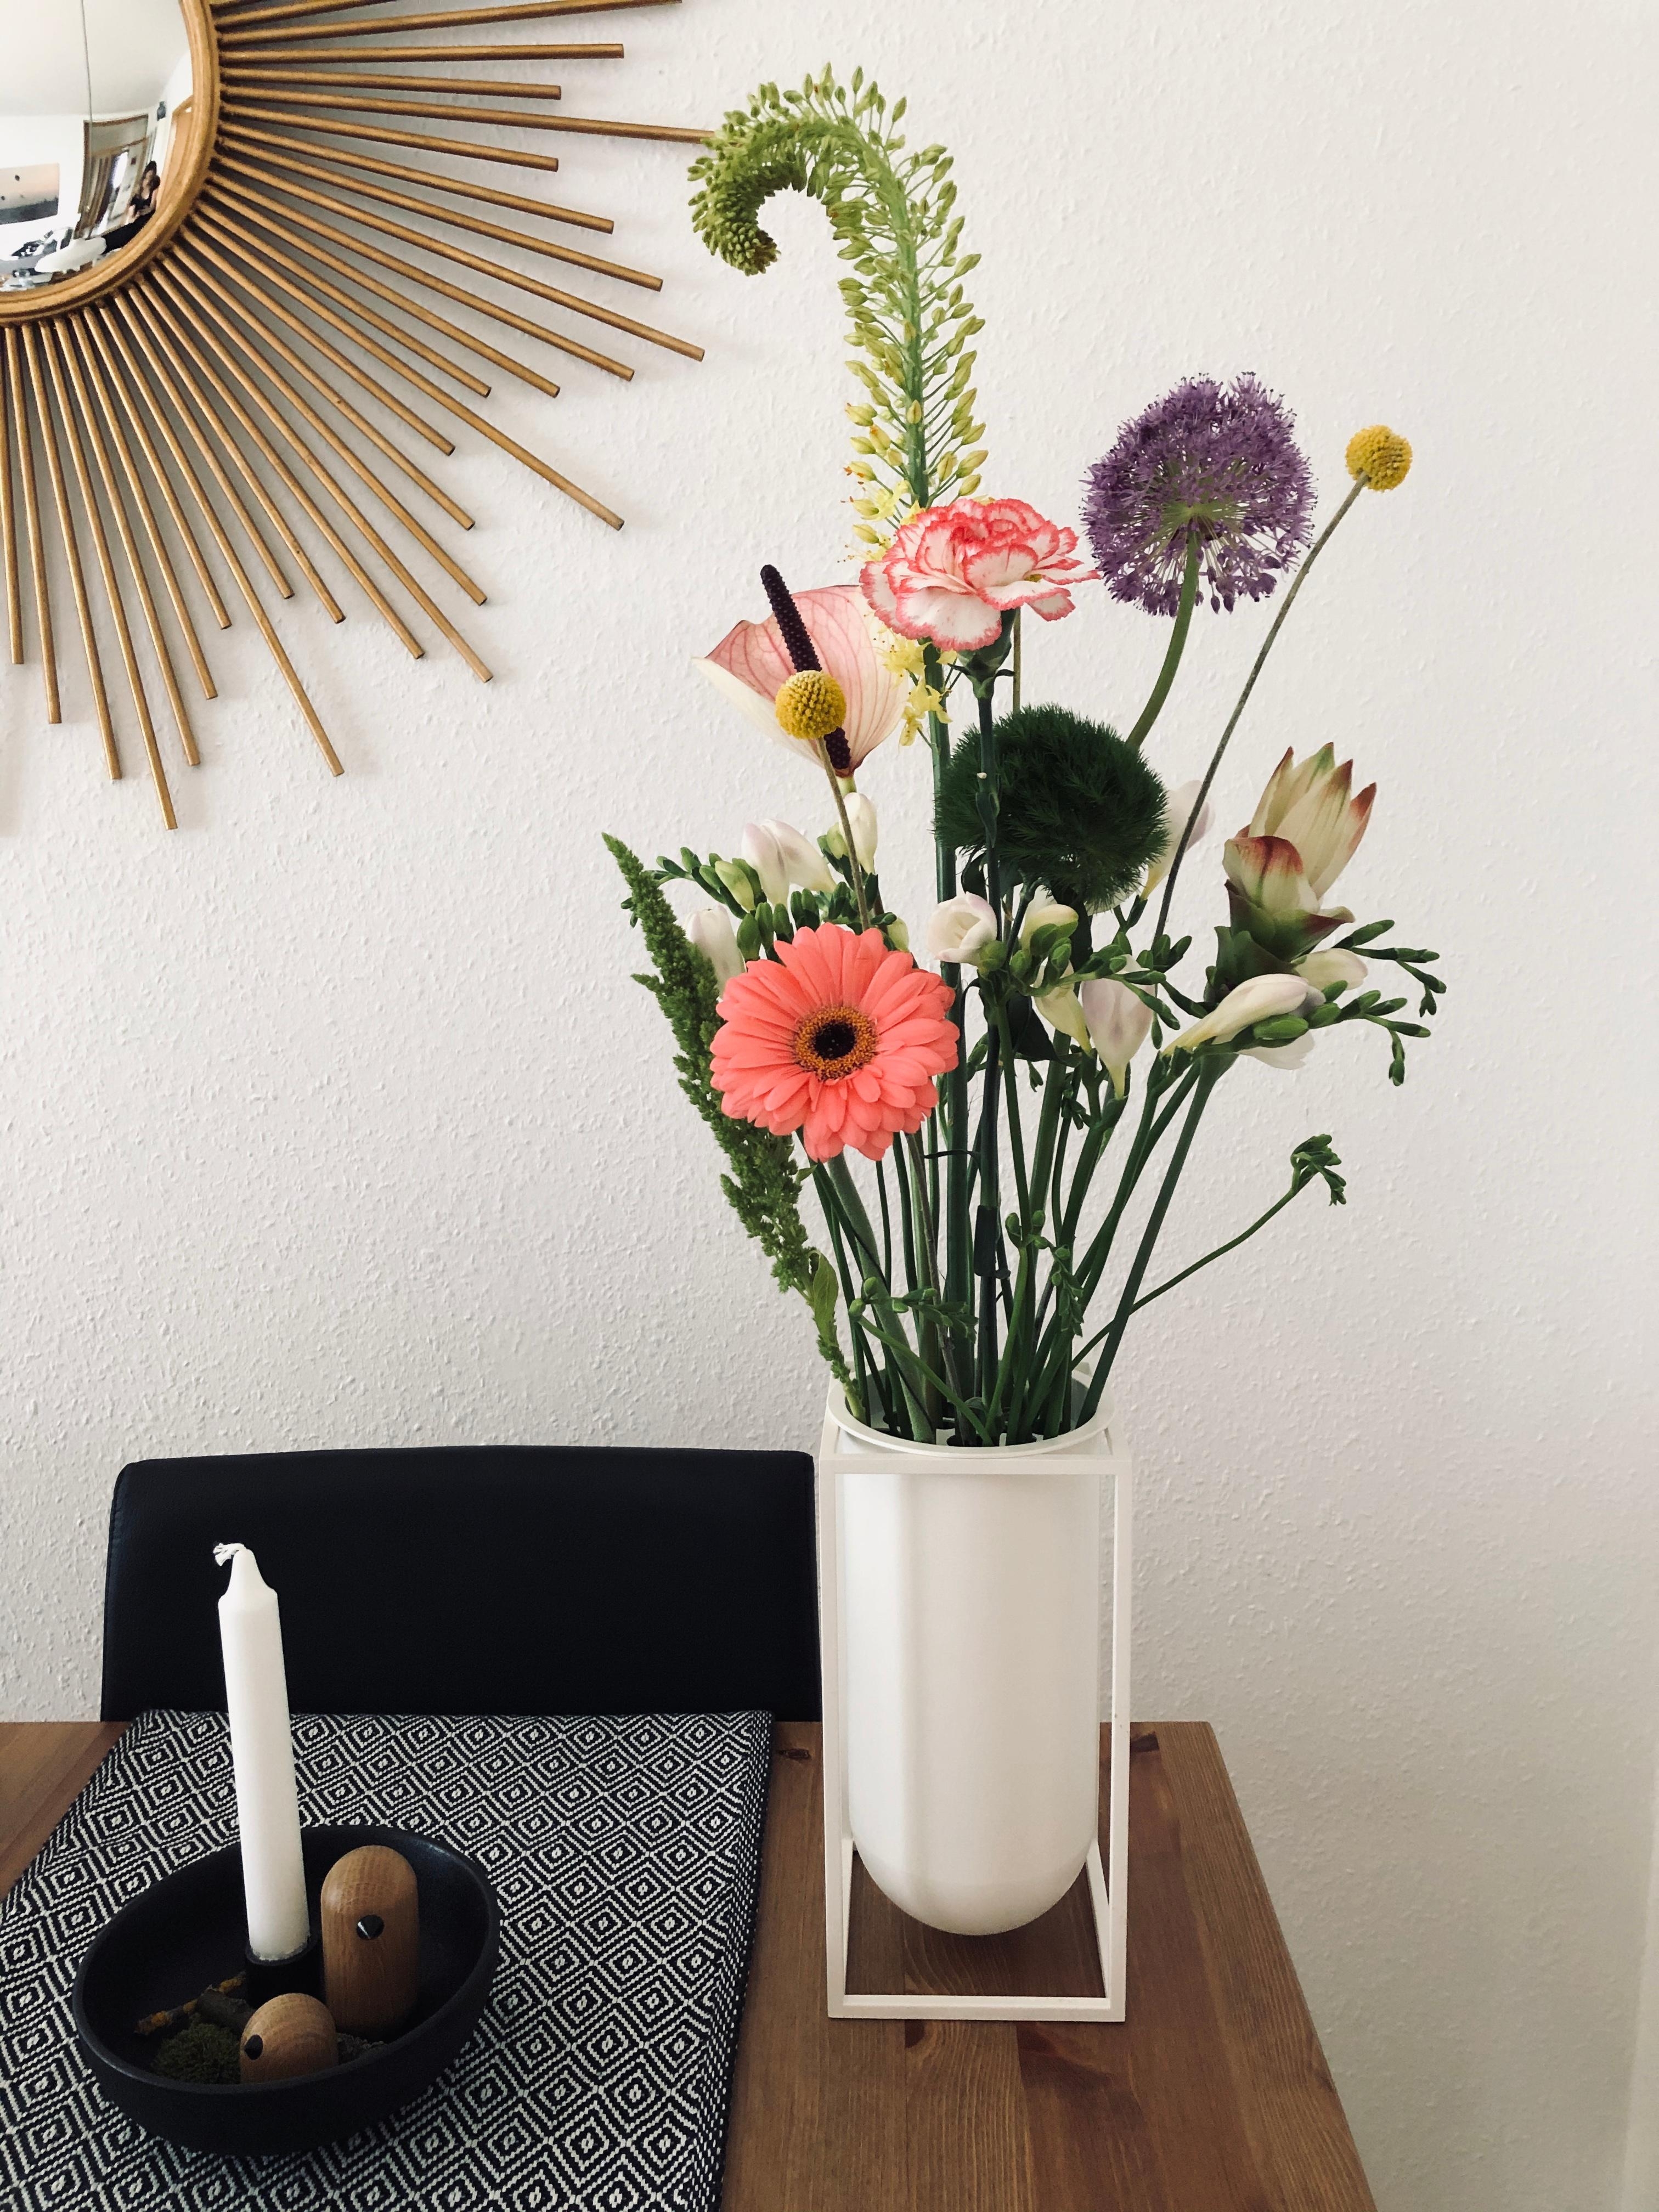 Geht nichts über frische Blumen in der neuen Lieblingsvase. #freshflower #vasenliebe #kubus